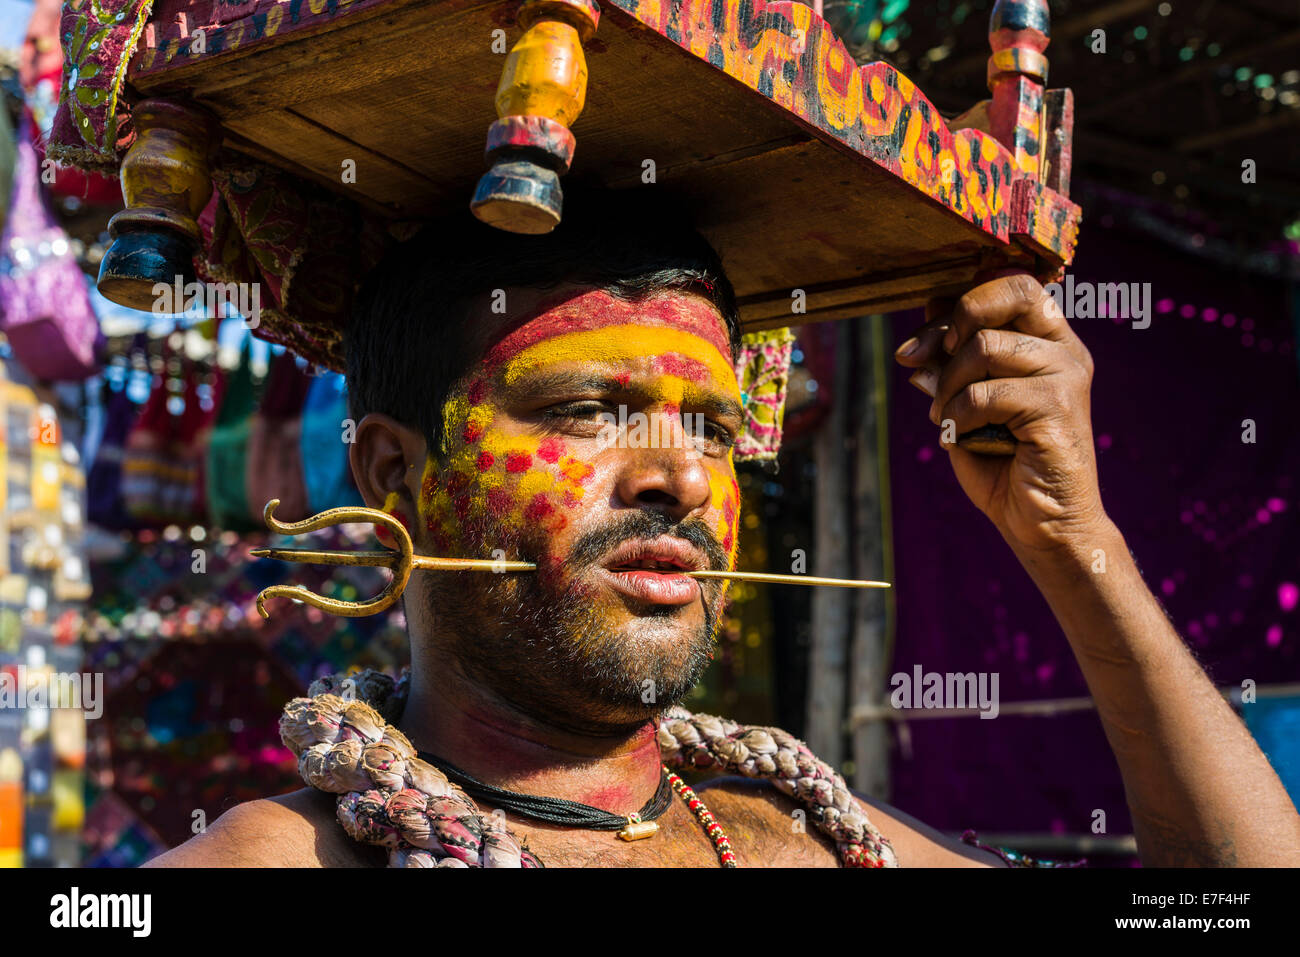 Ein Mann mit einem kleinen Messing-Dreizack durchbohrt seine Wange sammelt Geld für religiöse Zwecke auf dem wöchentlichen Flohmarkt Stockfoto